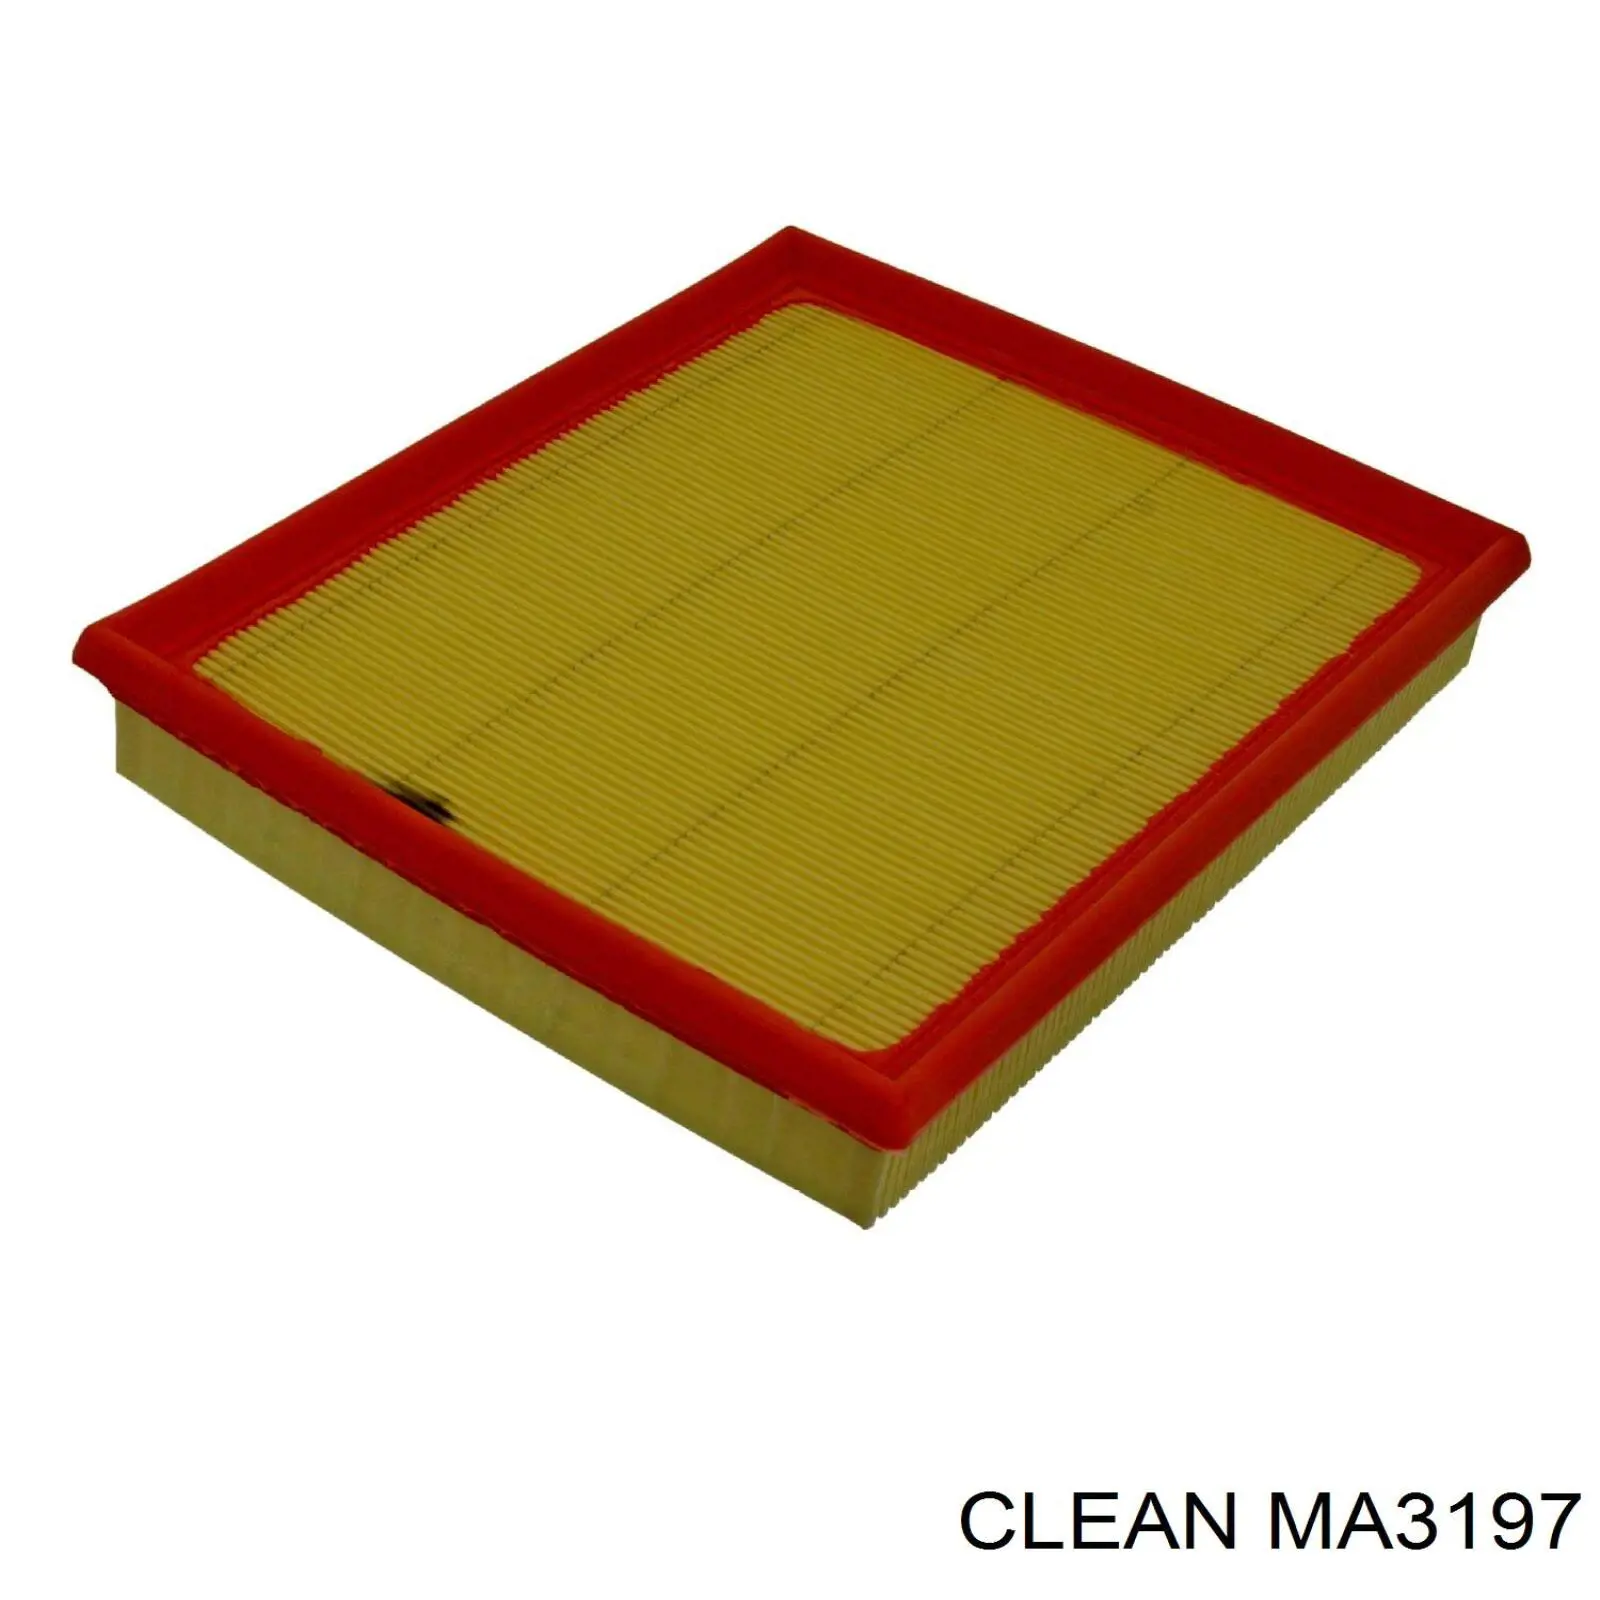 MA3197 Clean filtro de aire